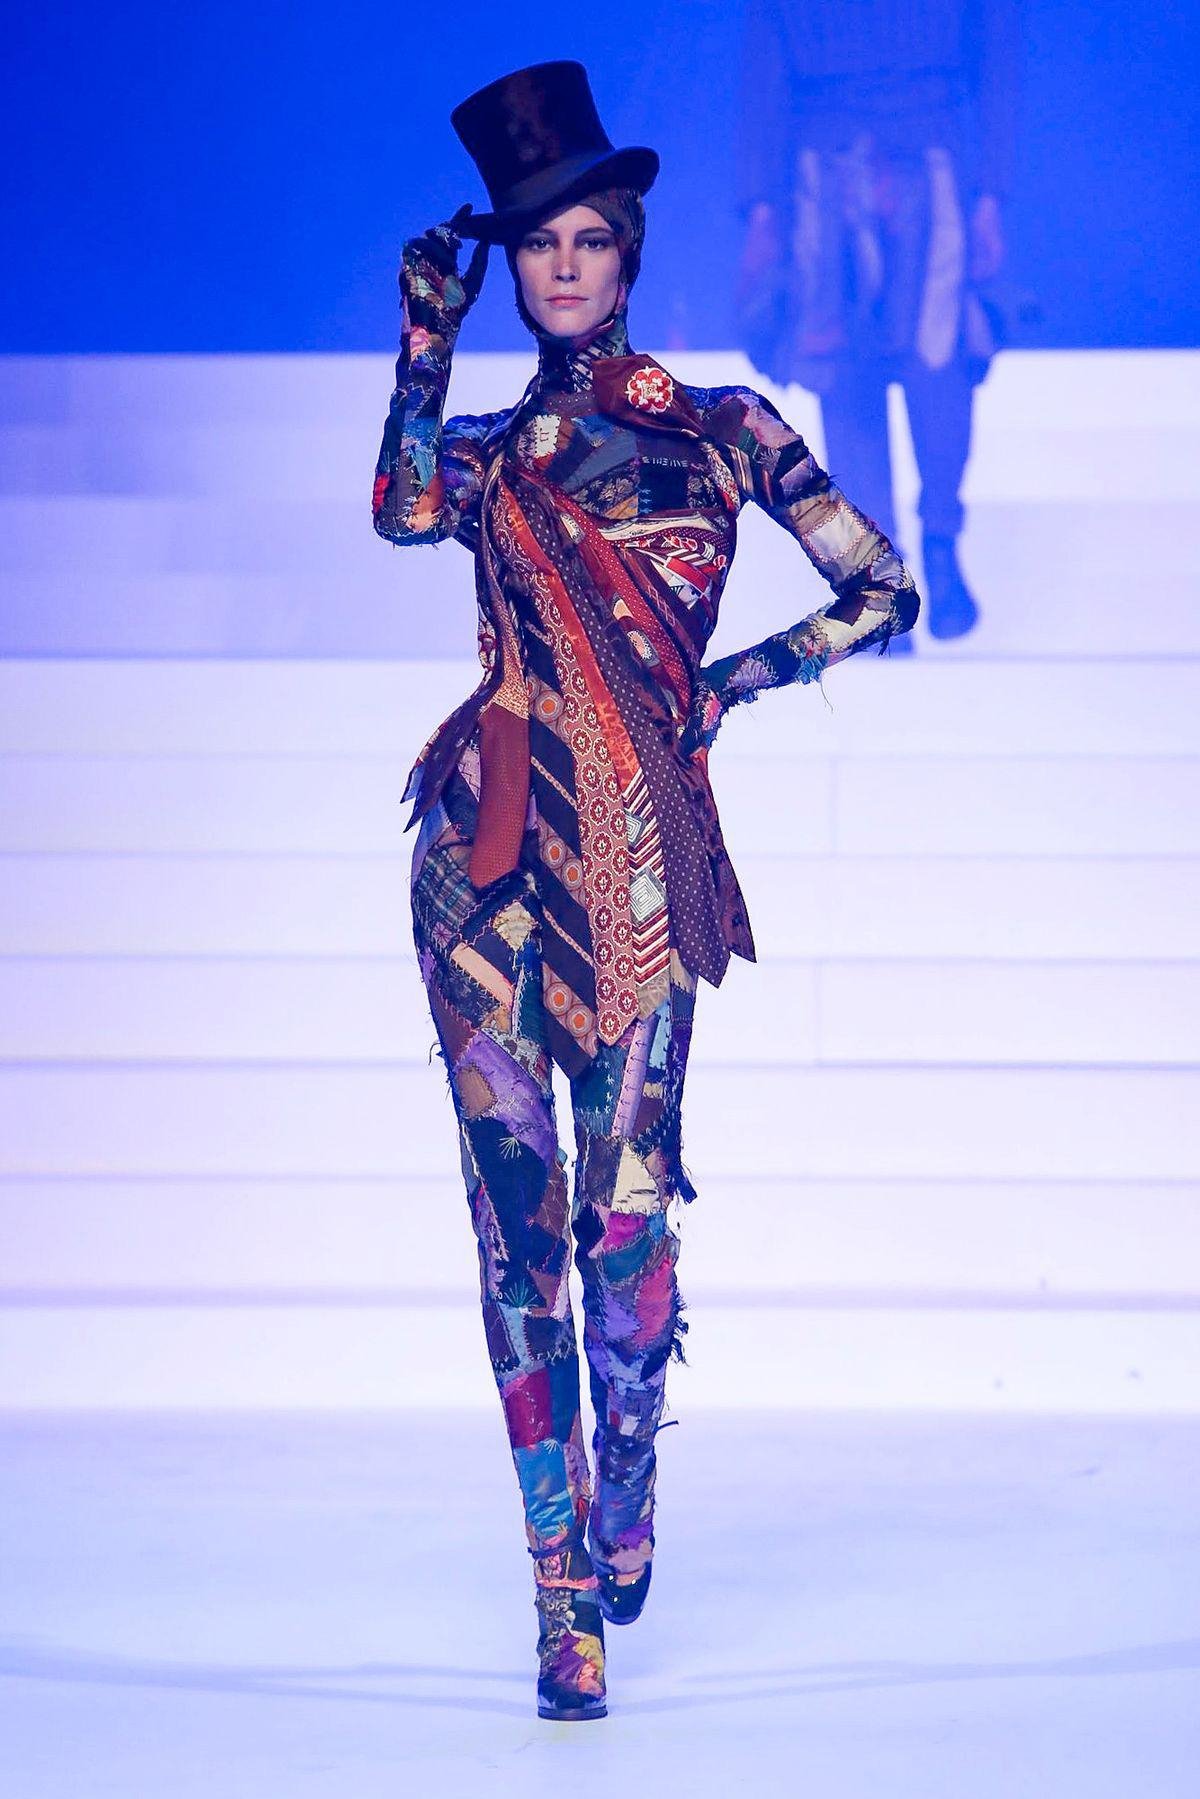 مجموعة جان بول غوتييه للخياطة الراقية لربيع 2020 أسبوع الموضة الباريسي موضة نسائية أزياء نسائية أخبار الموضة